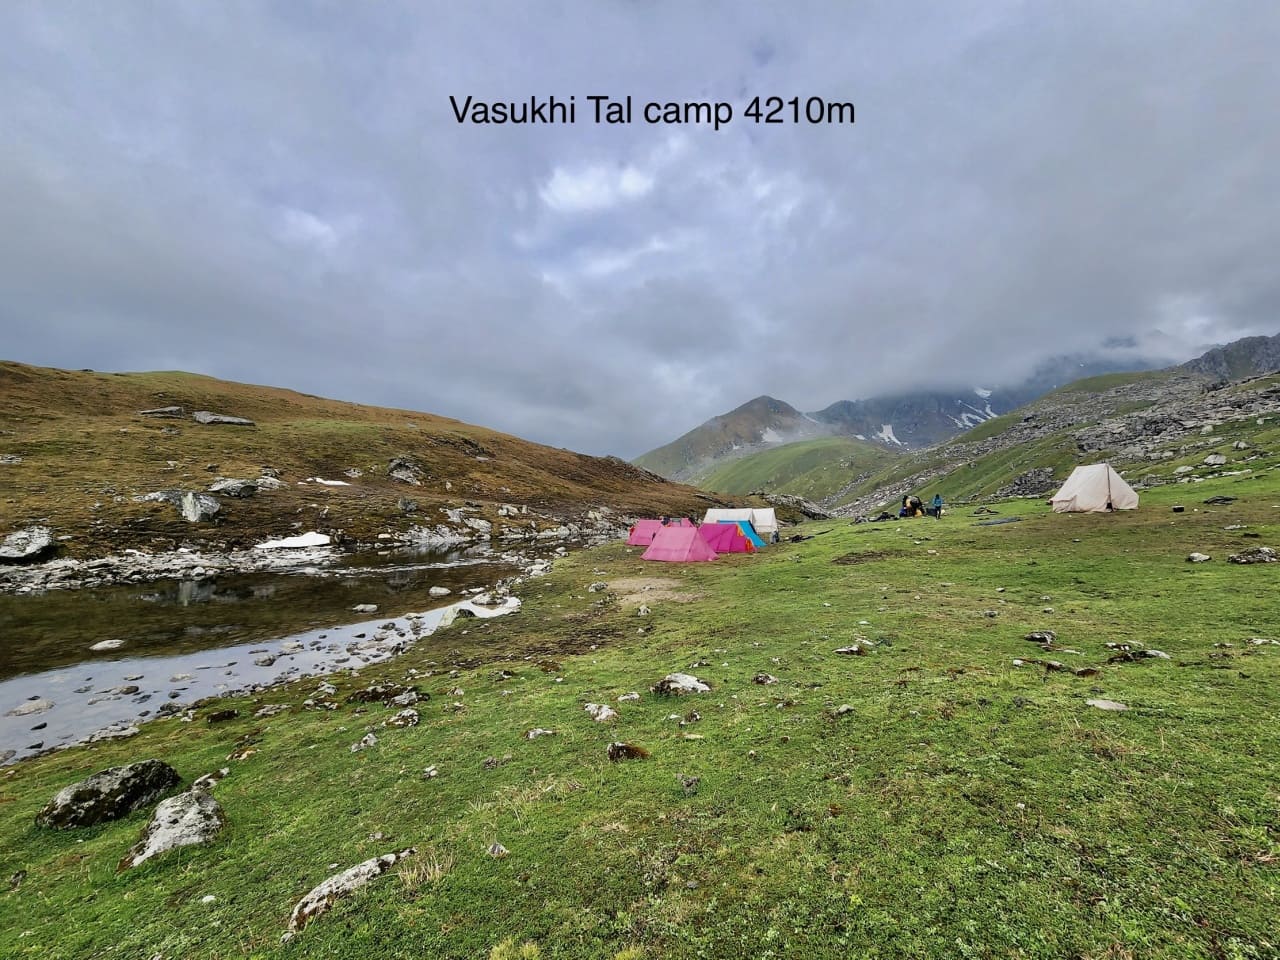 Vasuki Tal camp site on Himalayan meadows